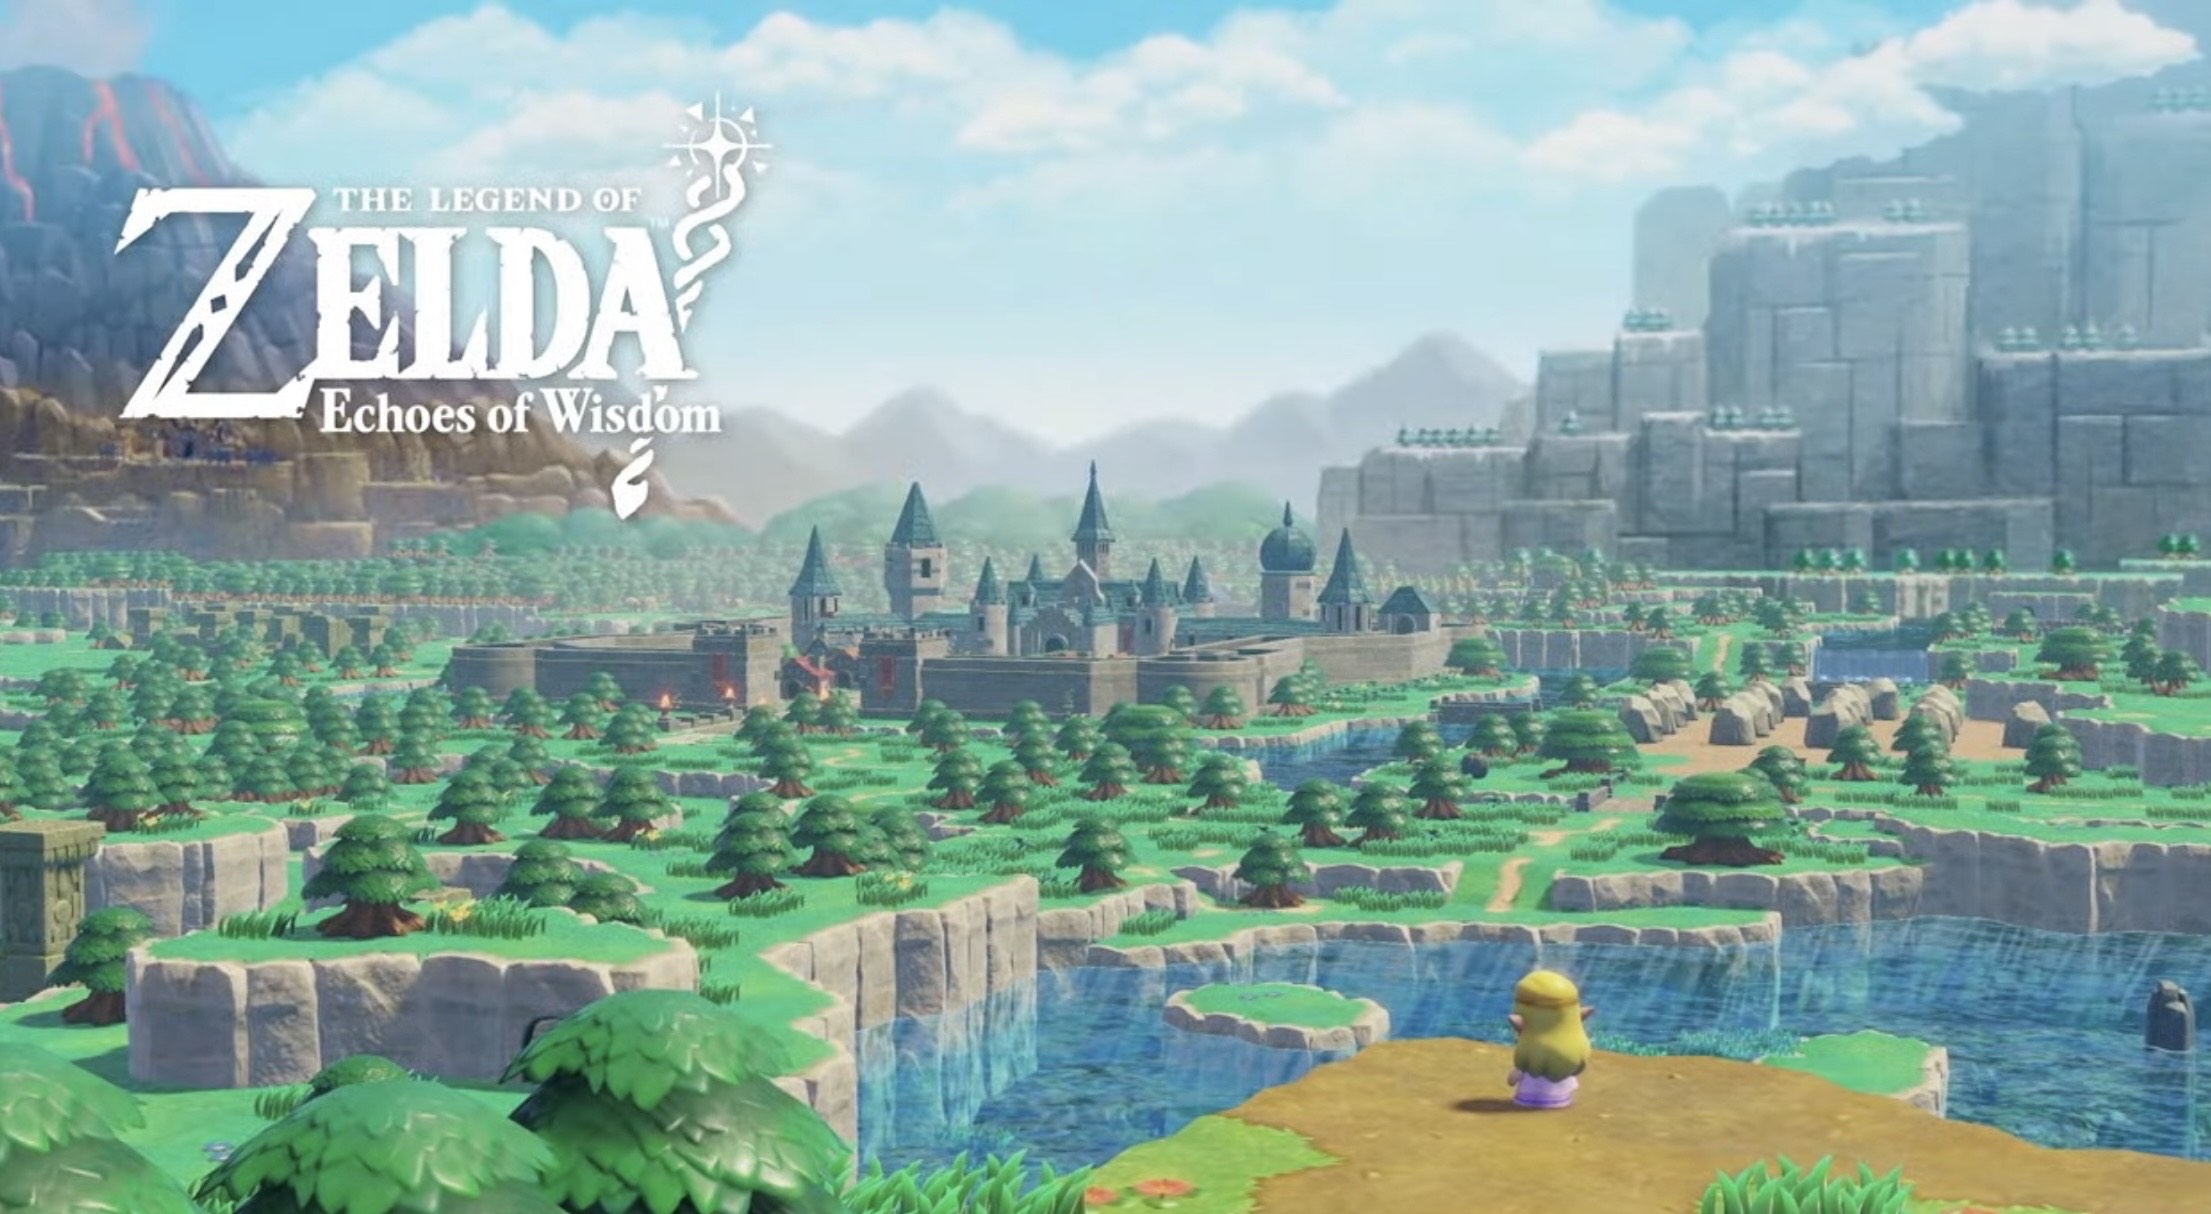 The Legend of Zelda: Echoes of Wisdom.